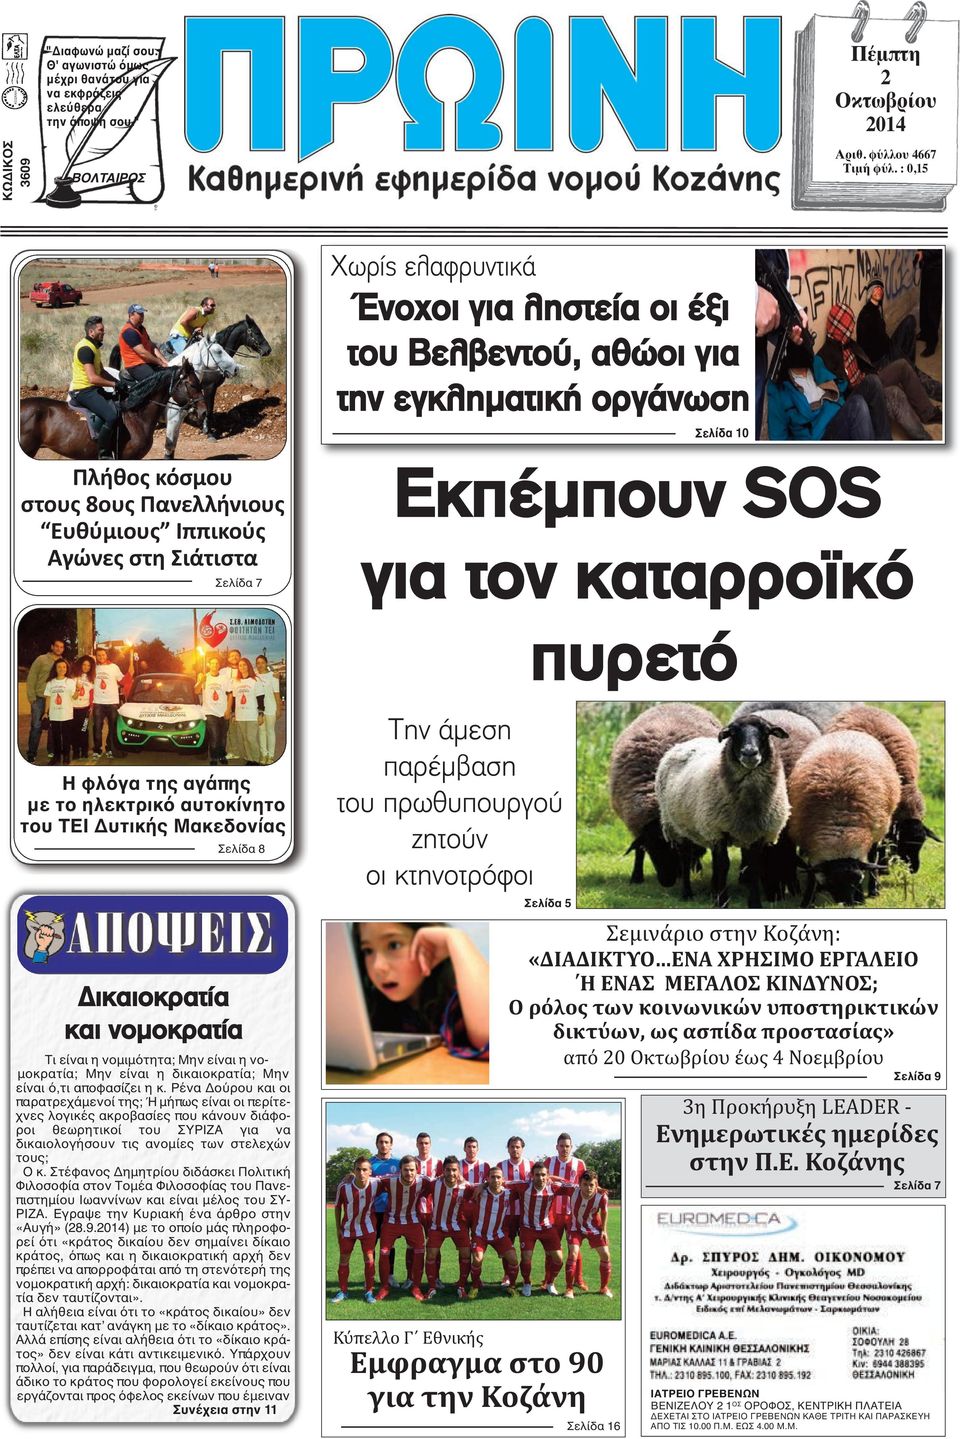 Εκπέμπουν SOS για τον καταρροϊκό πυρετό Η φλόγα της αγάπης με το ηλεκτρικό αυτοκίνητο του ΤΕΙ Δυτικής Μακεδονίας Σελίδα 8 Δικαιοκρατία και νομοκρατία Τι είναι η νομιμότητα; Μην είναι η νομοκρατία;